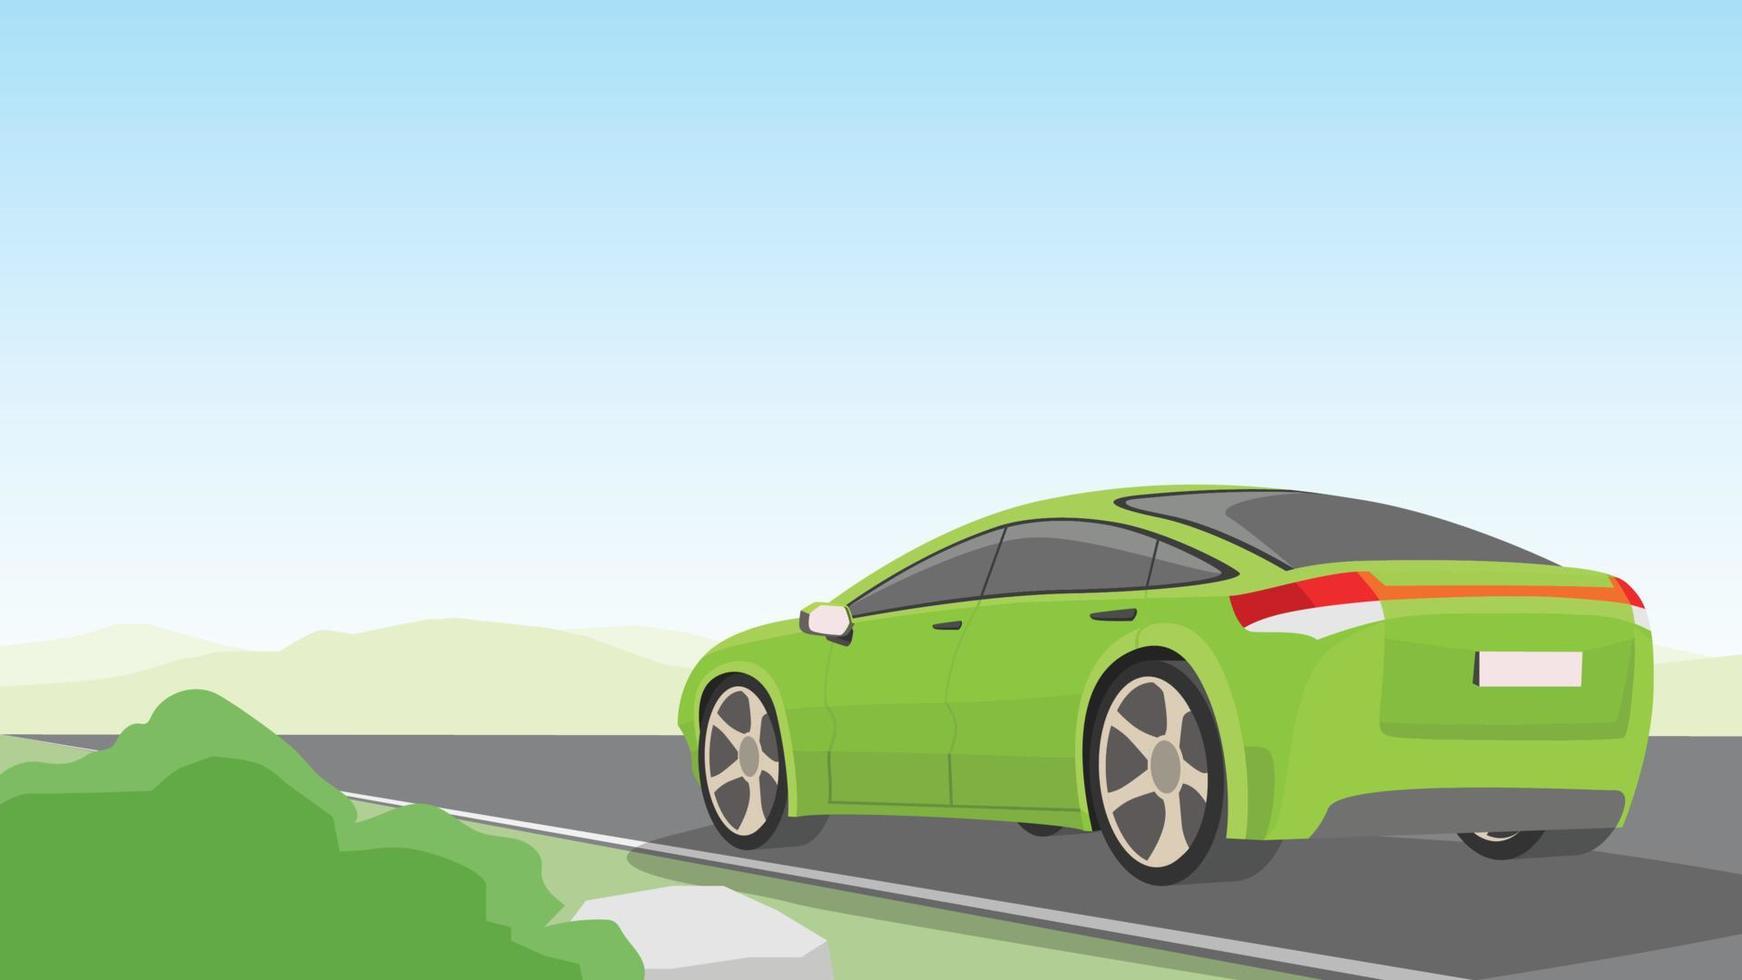 paisagem de desenho vetorial de estrada de asfalto em campo aberto. carro de passageiros verde avança. fundo das montanhas sob o céu azul com espaço livre. e camadas separadas. vetor